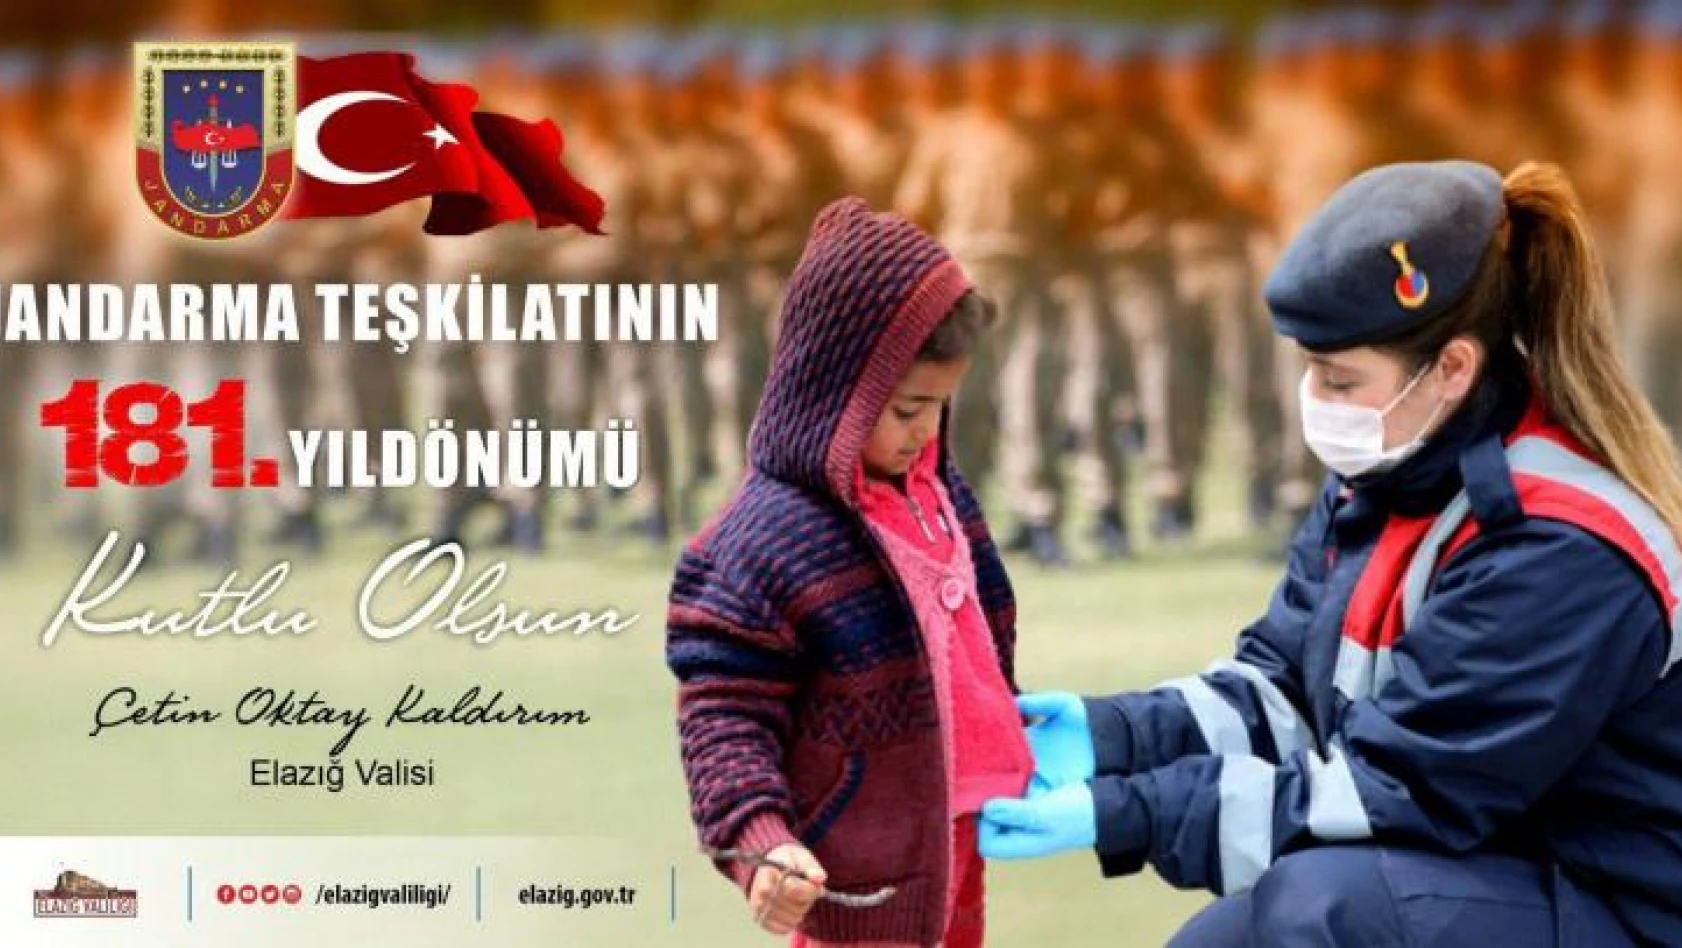 Kaldırım''Jandarma Teşkilatının 181. Yıl dönümü Kutluyorum''